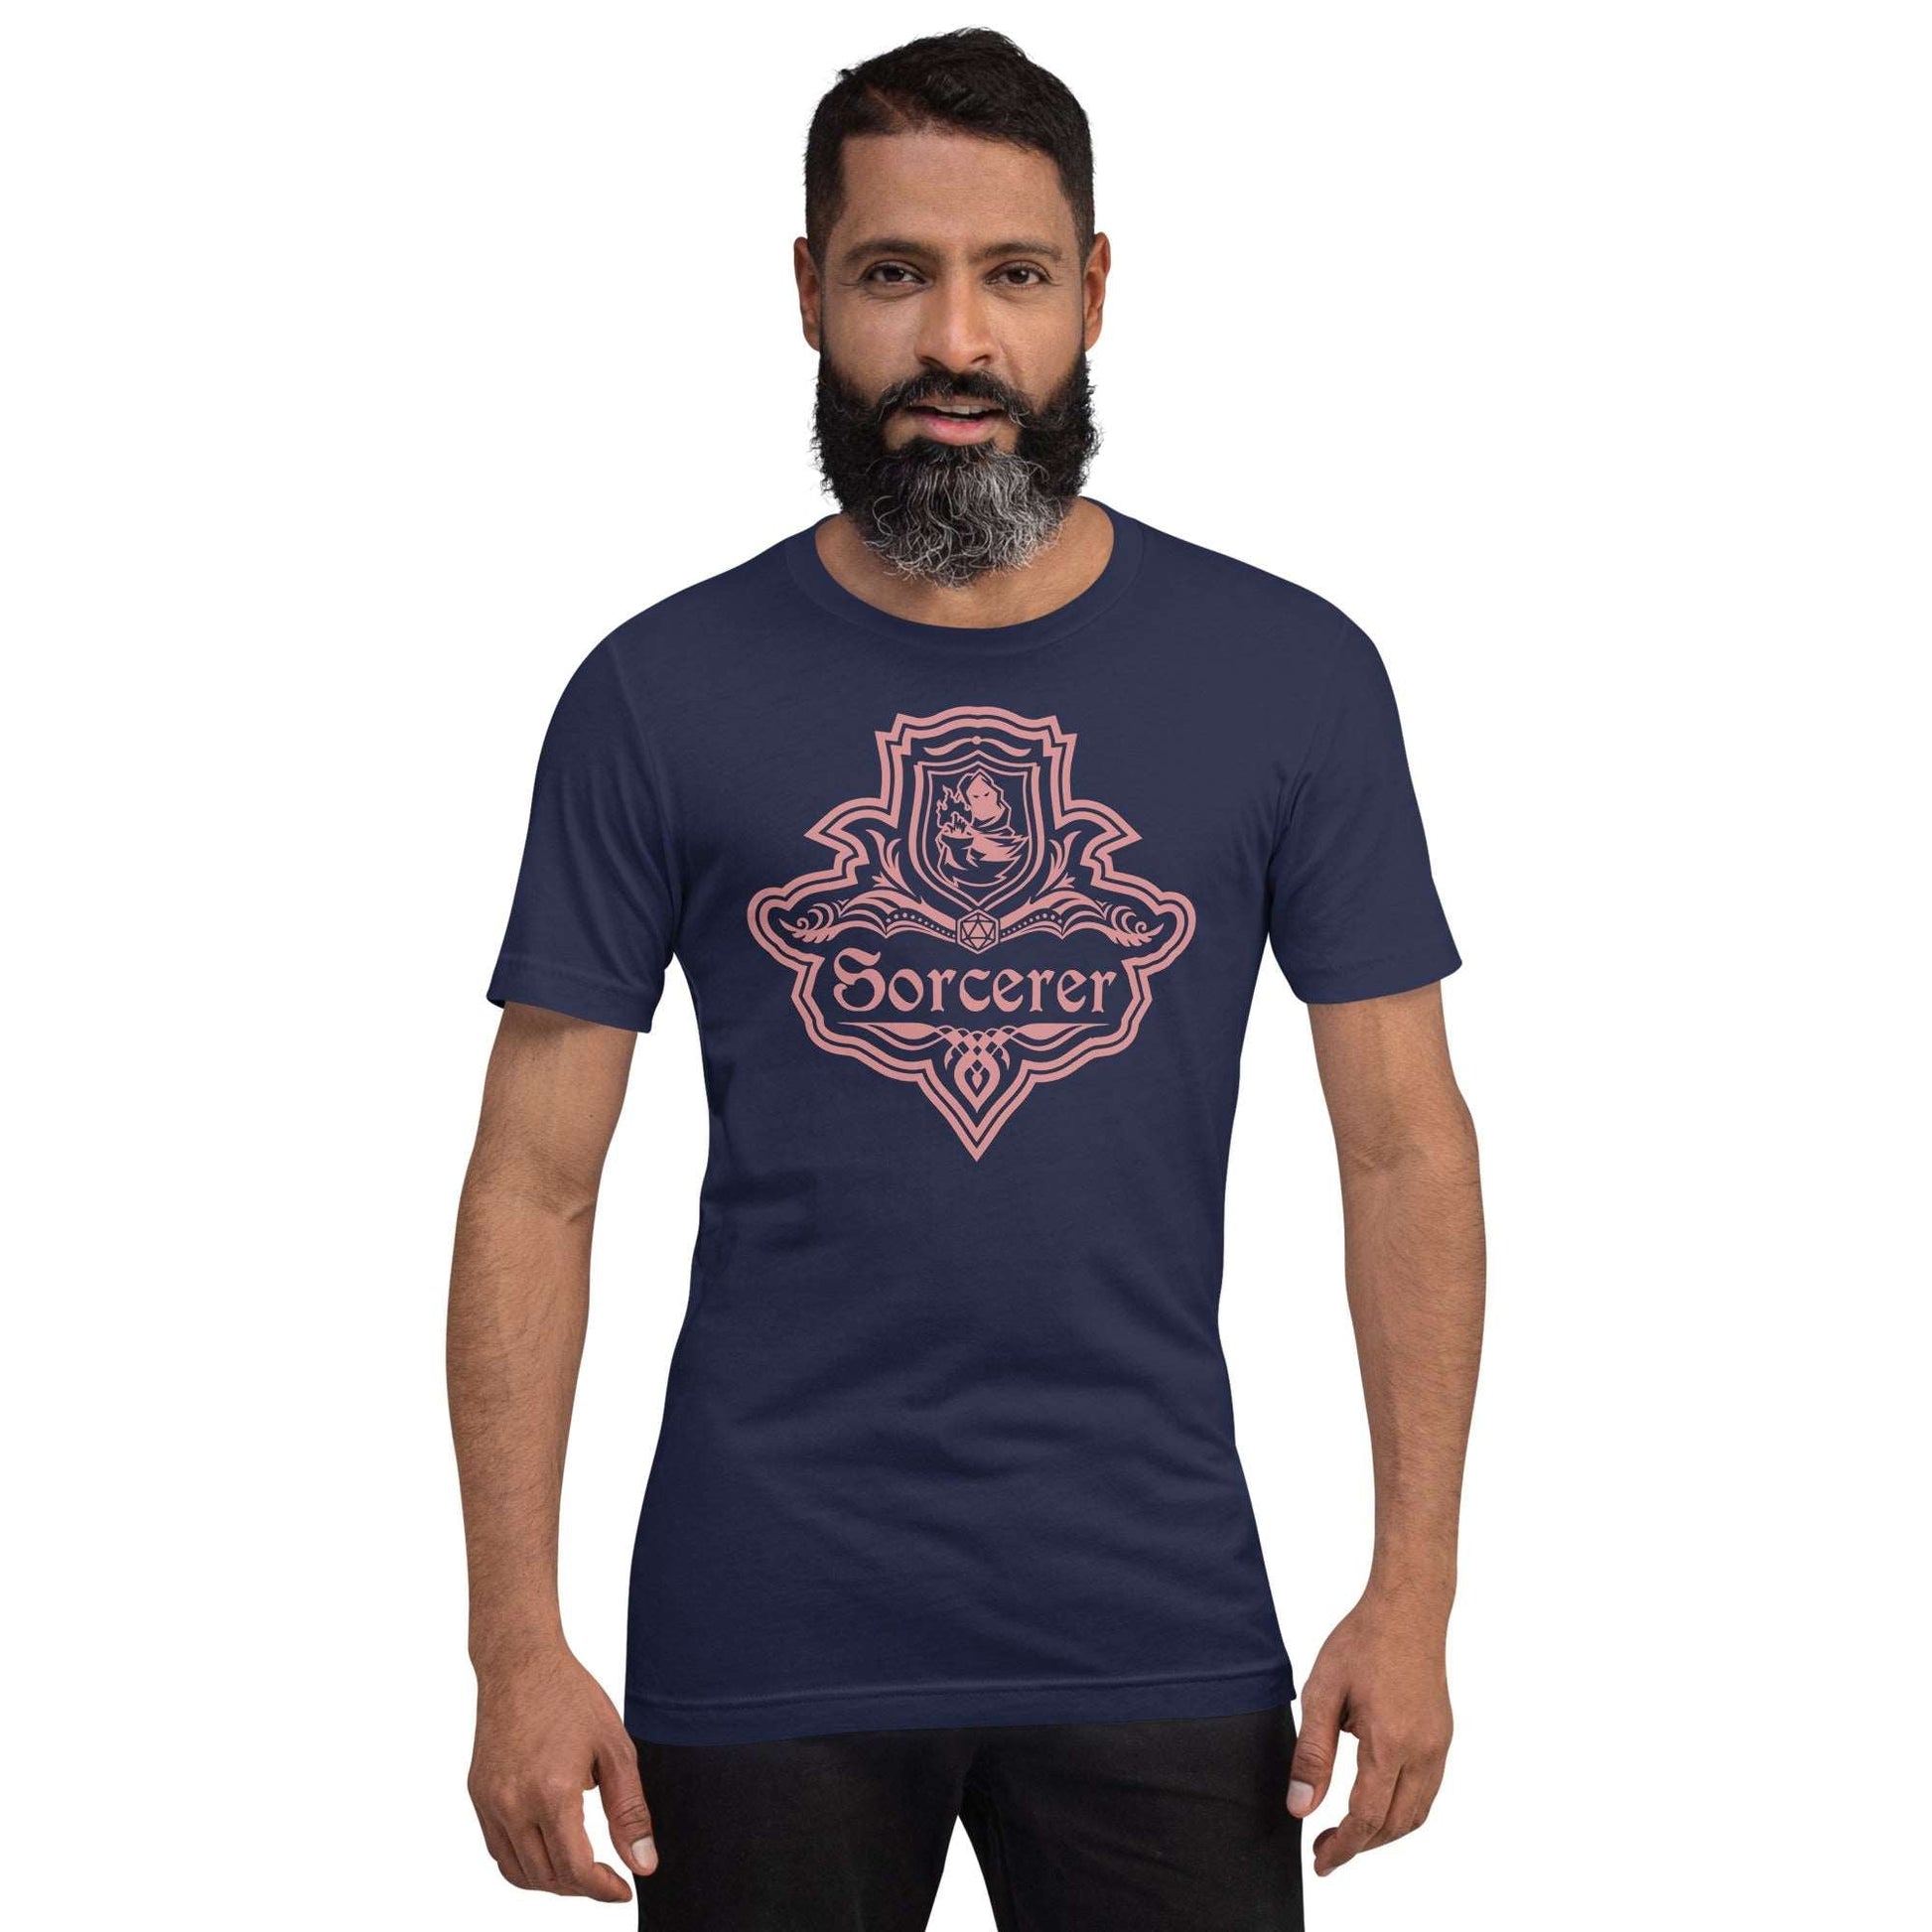 DnD Sorcerer Class Emblem T-Shirt - Dungeons & Dragons Sorcerer Tee T-Shirt